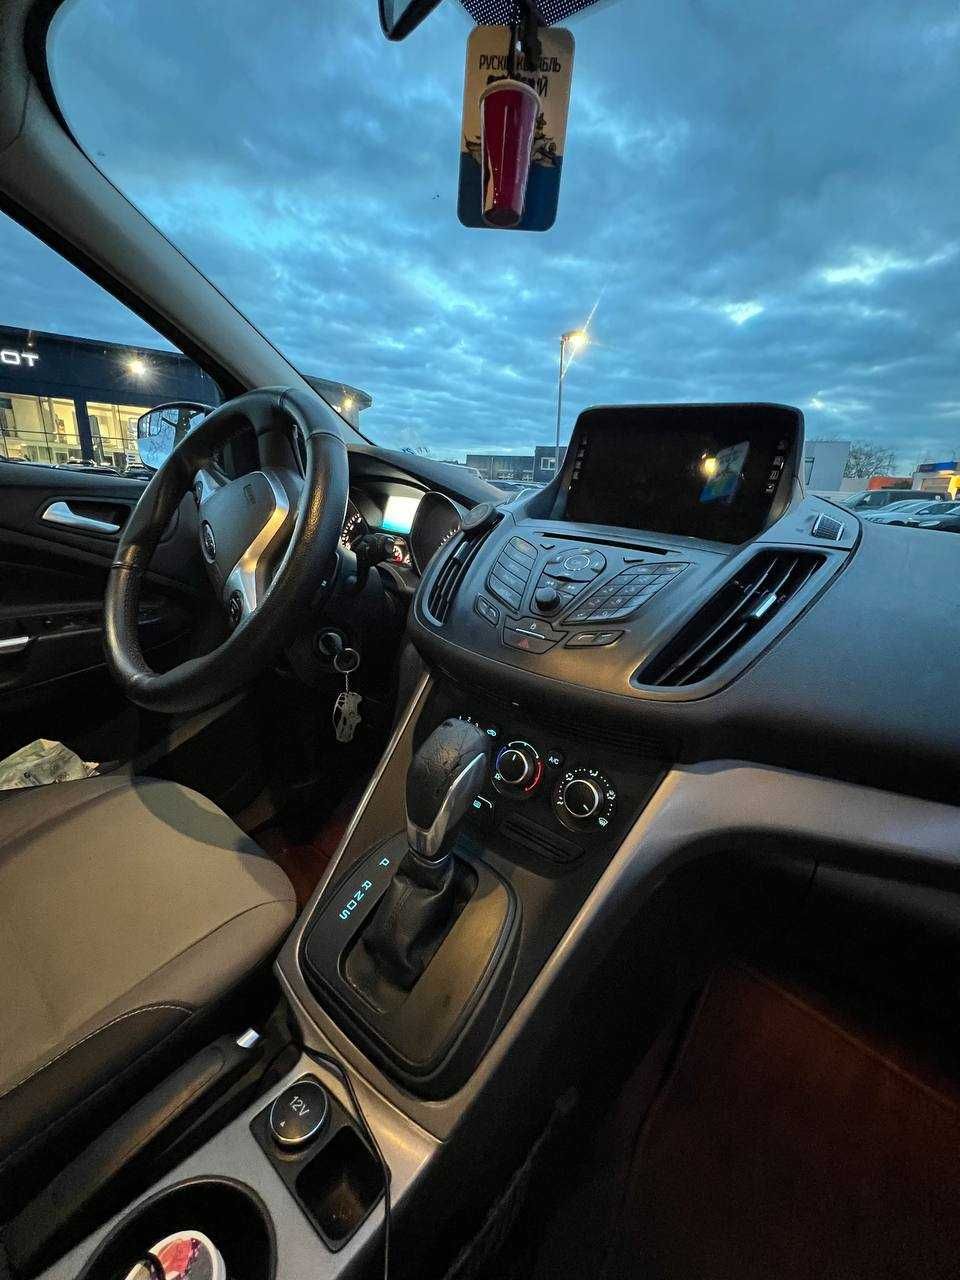 Продам Форд ескейп Американець автомат бензин 2015 р в ідеалі Дніпро